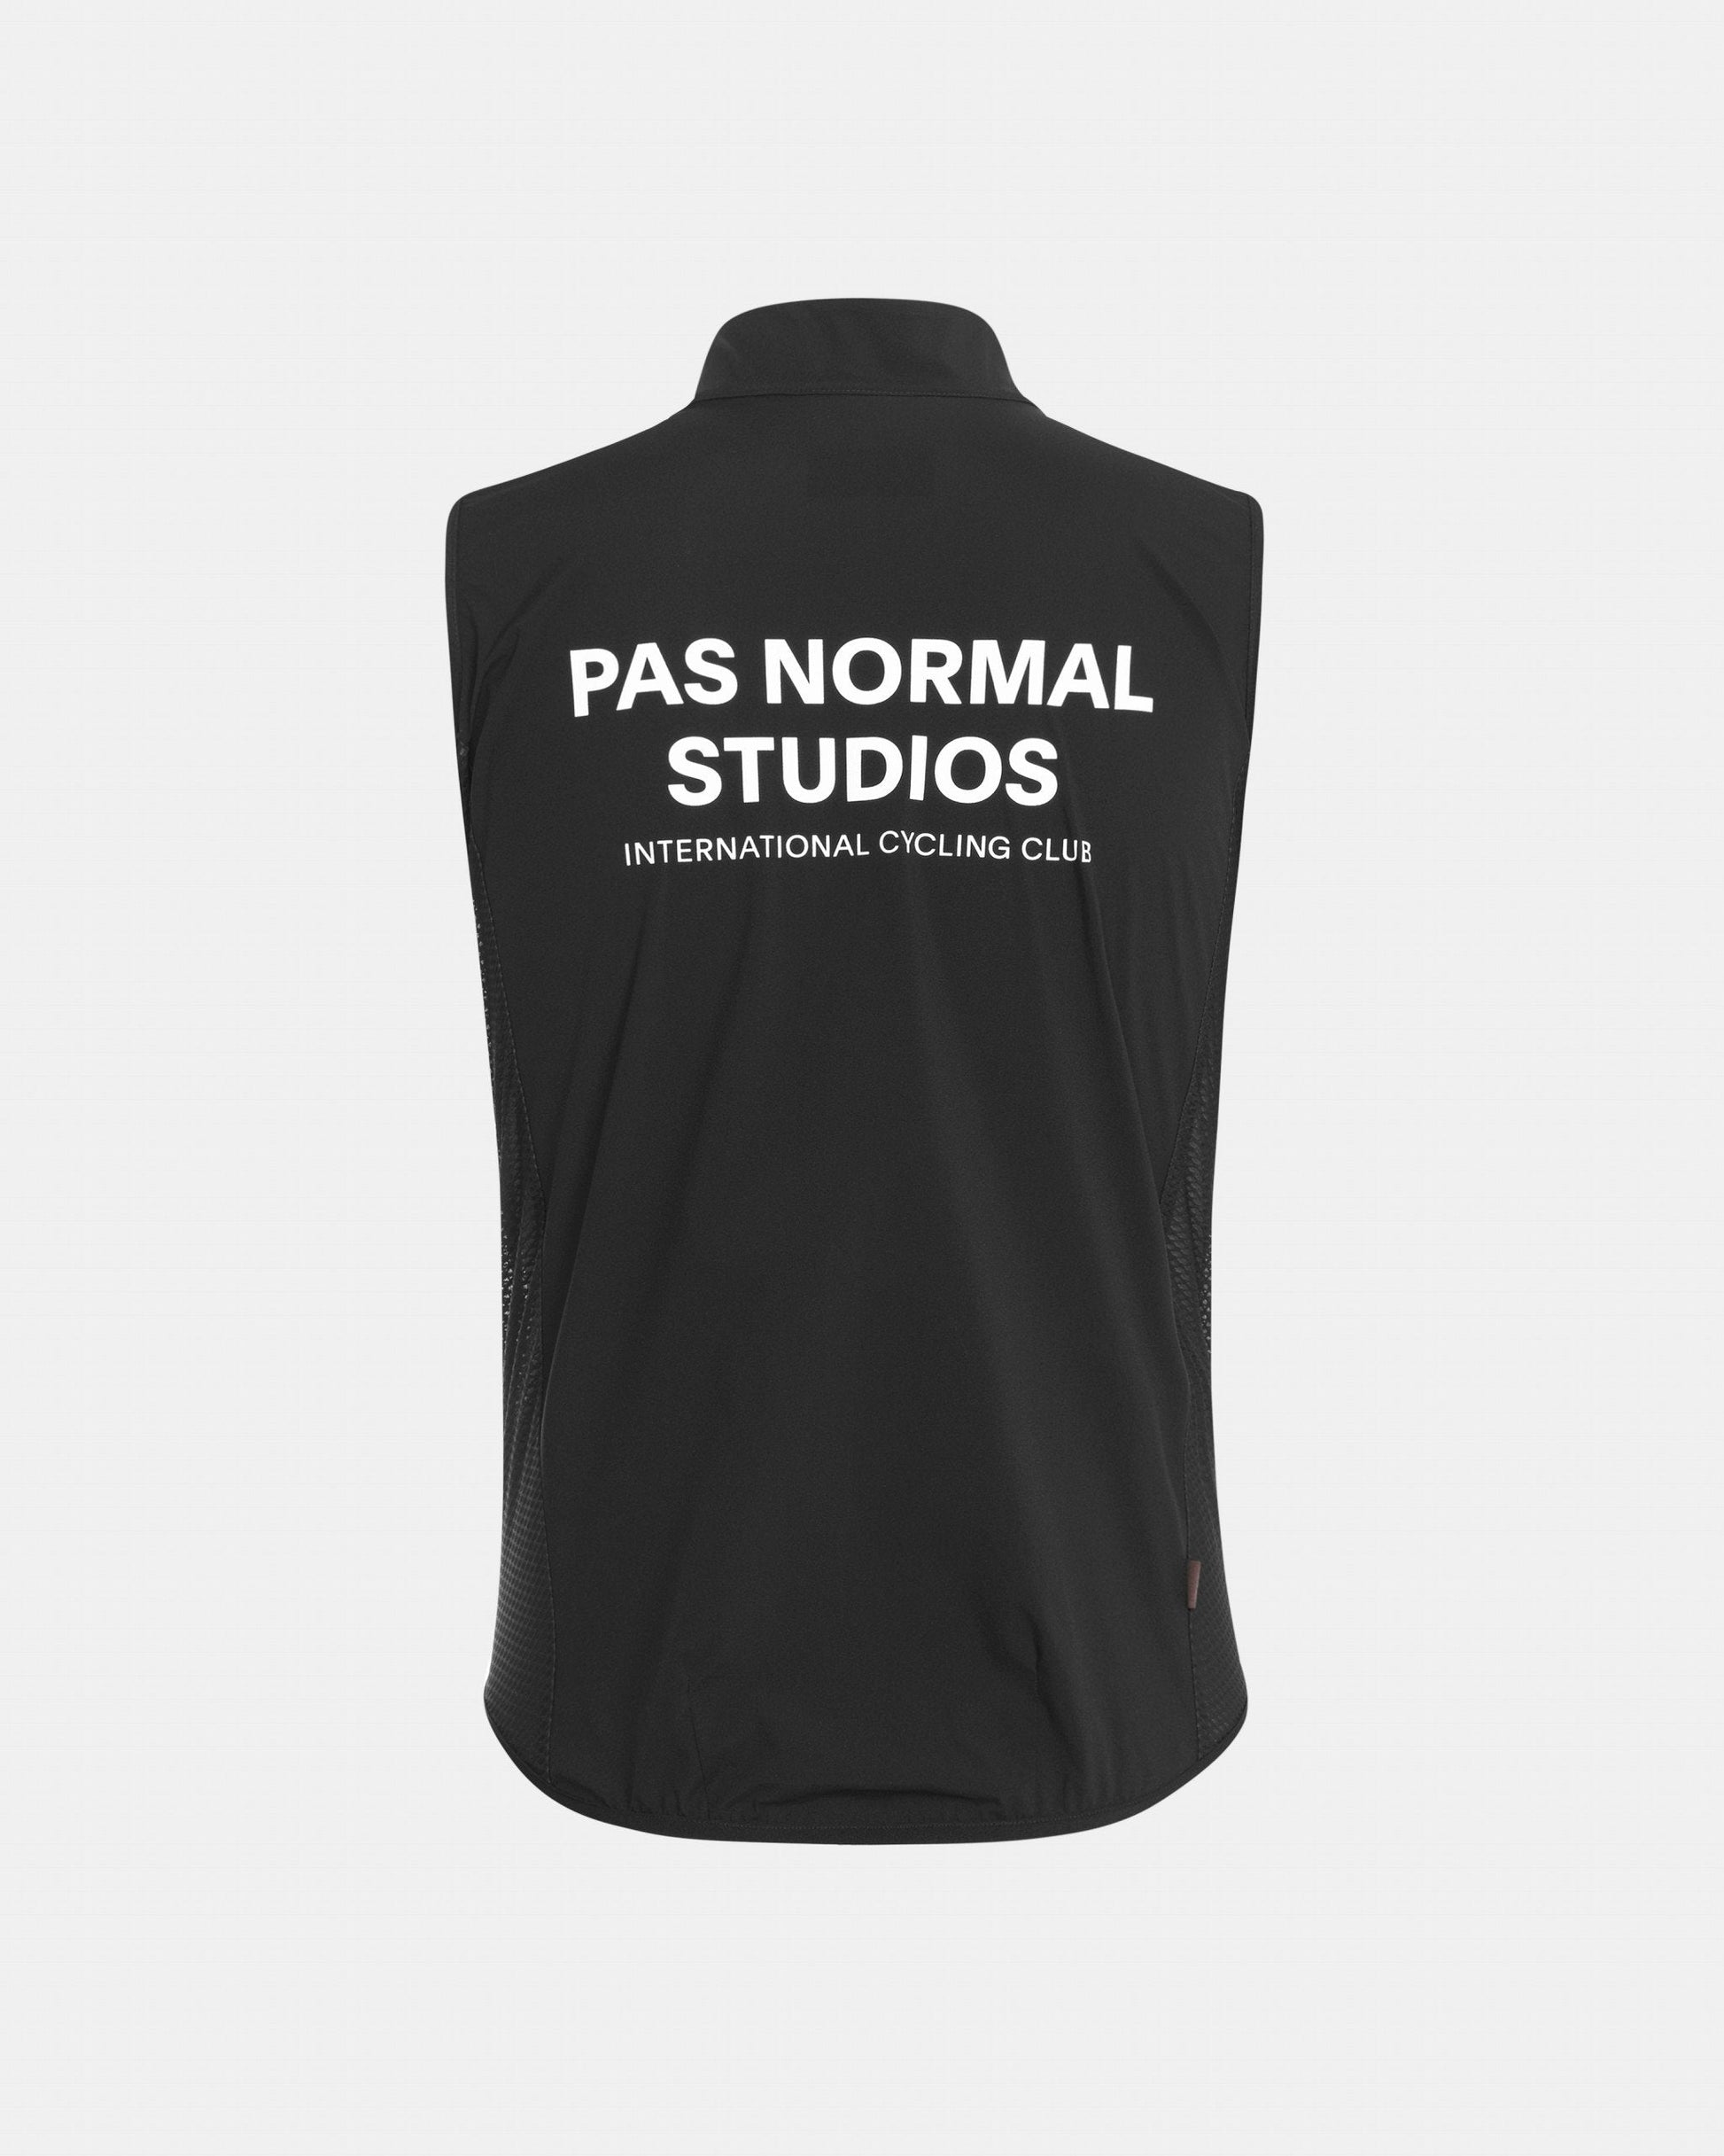 Pas Normal Studios - Veste Mechanism Stow Away Homme Vestes Pas Normal Studios 